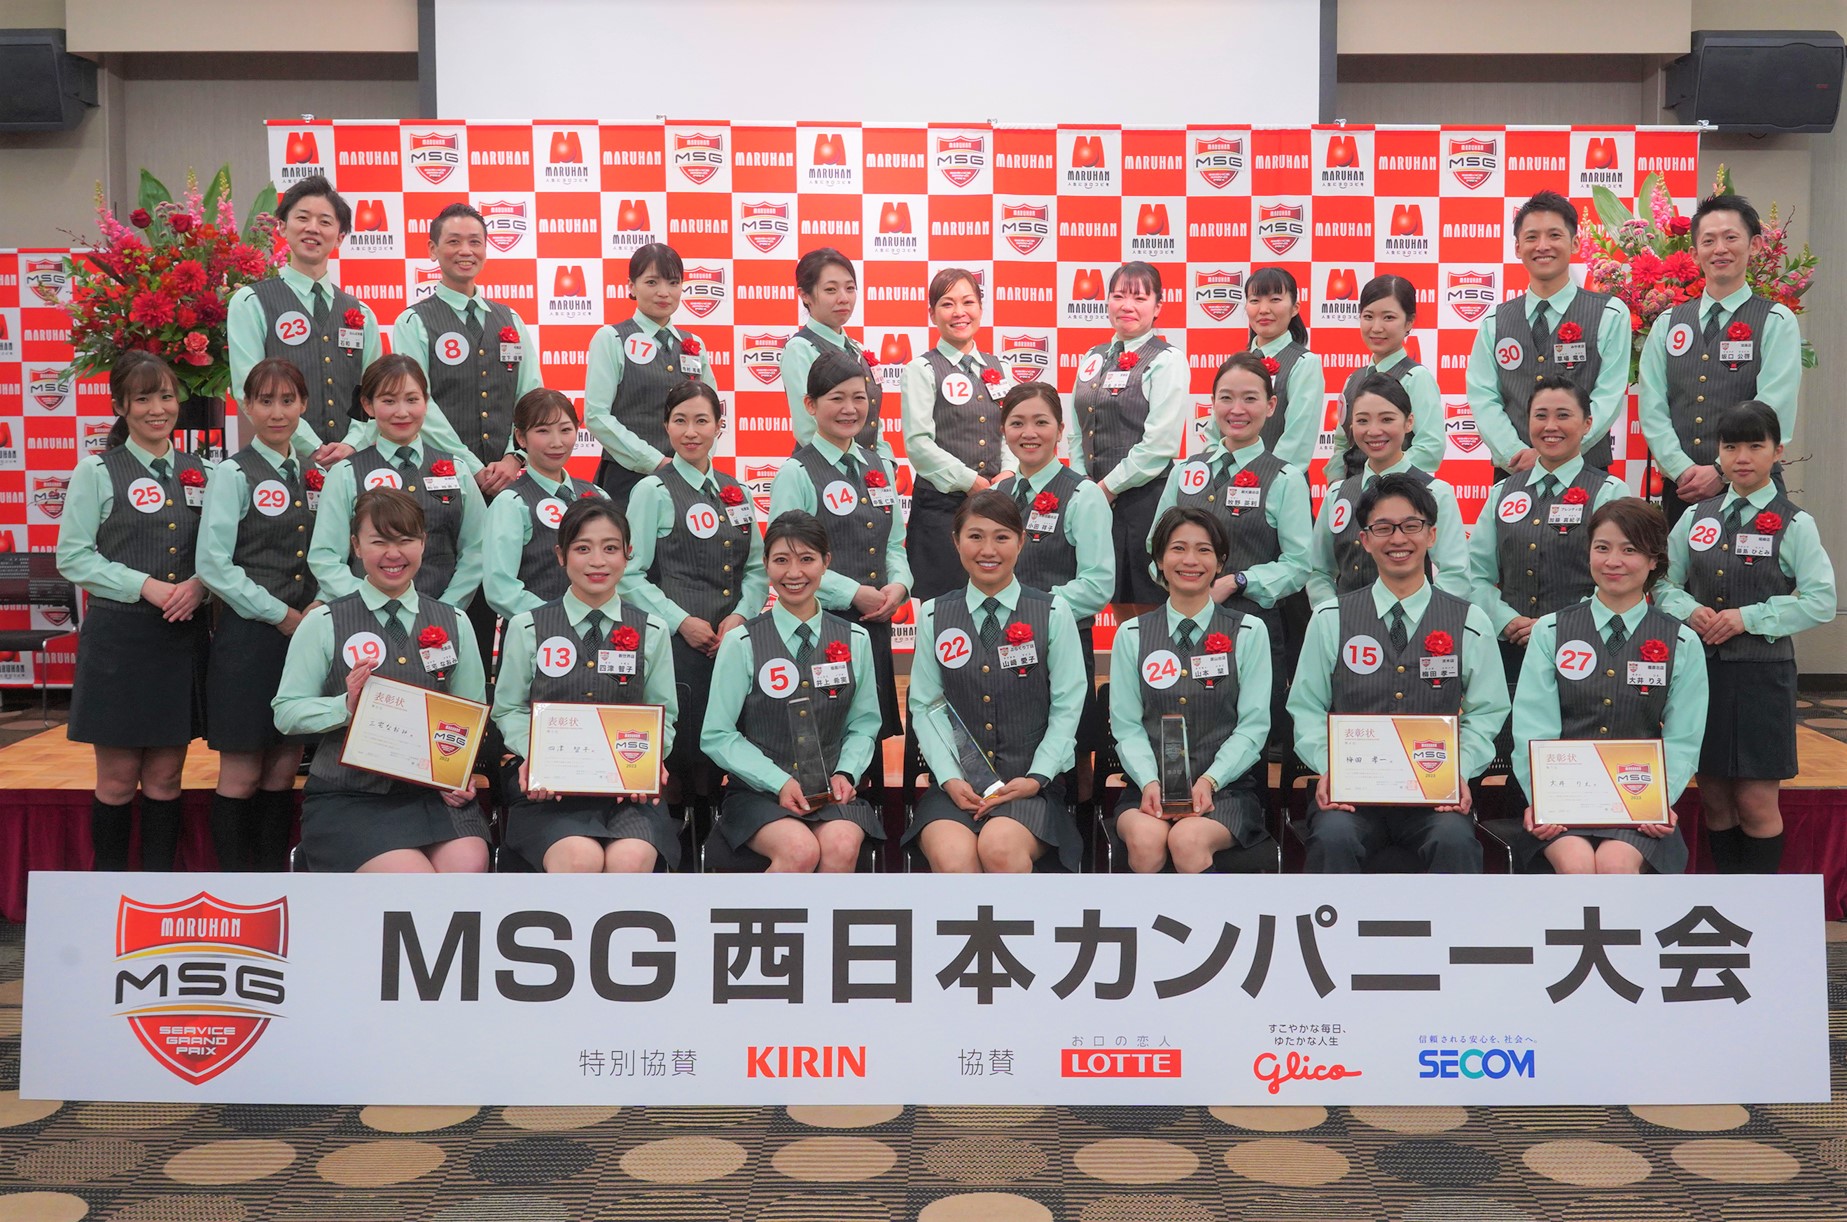 マルハンサービスグランプリ 西日本カンパニー大会を開催 | ニュース